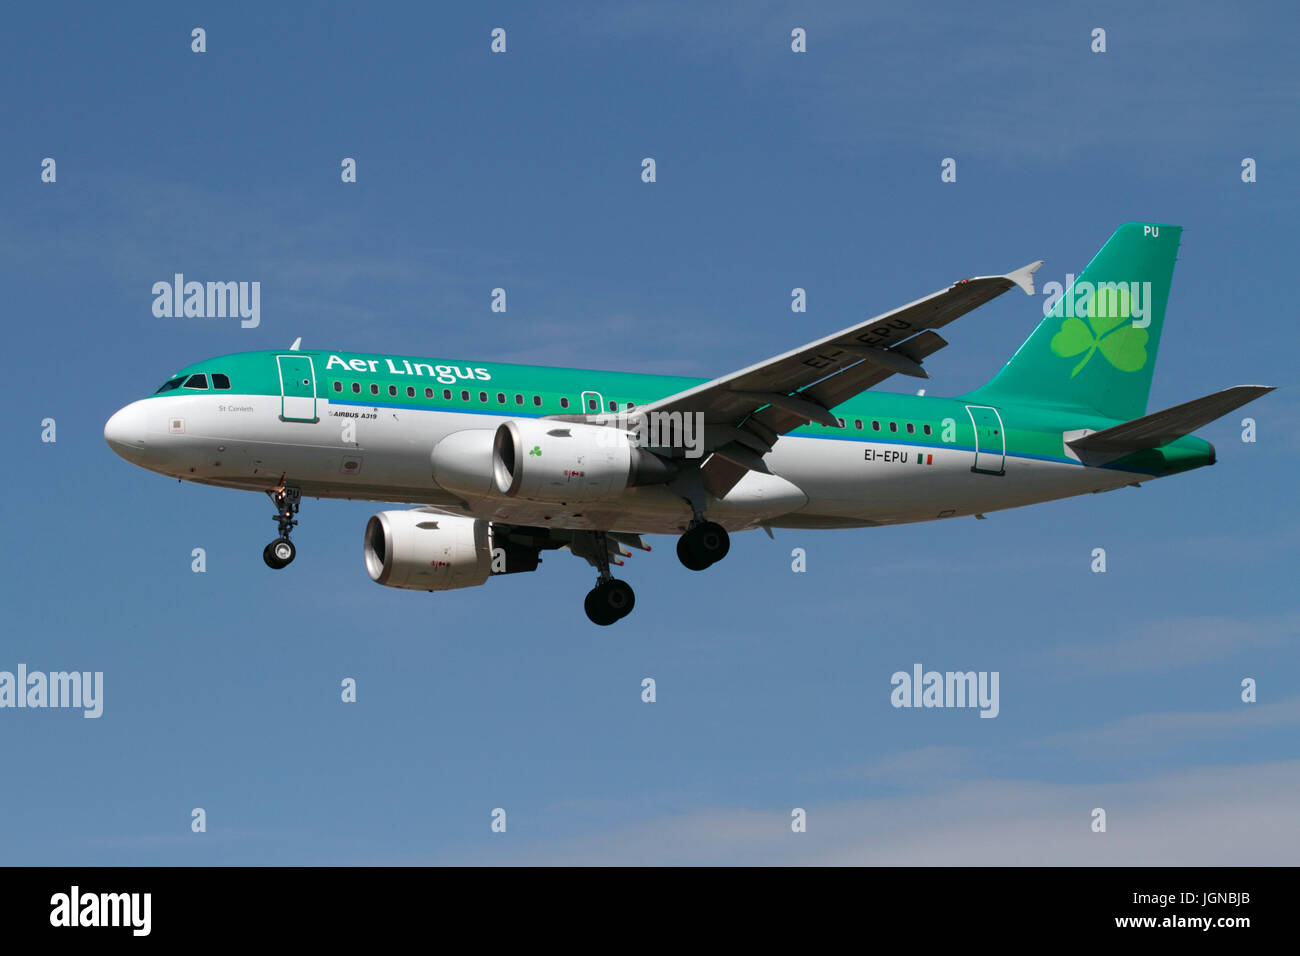 Les voyages aériens. Aer Lingus Airbus A319 avion de ligne en approche contre un ciel bleu clair Banque D'Images